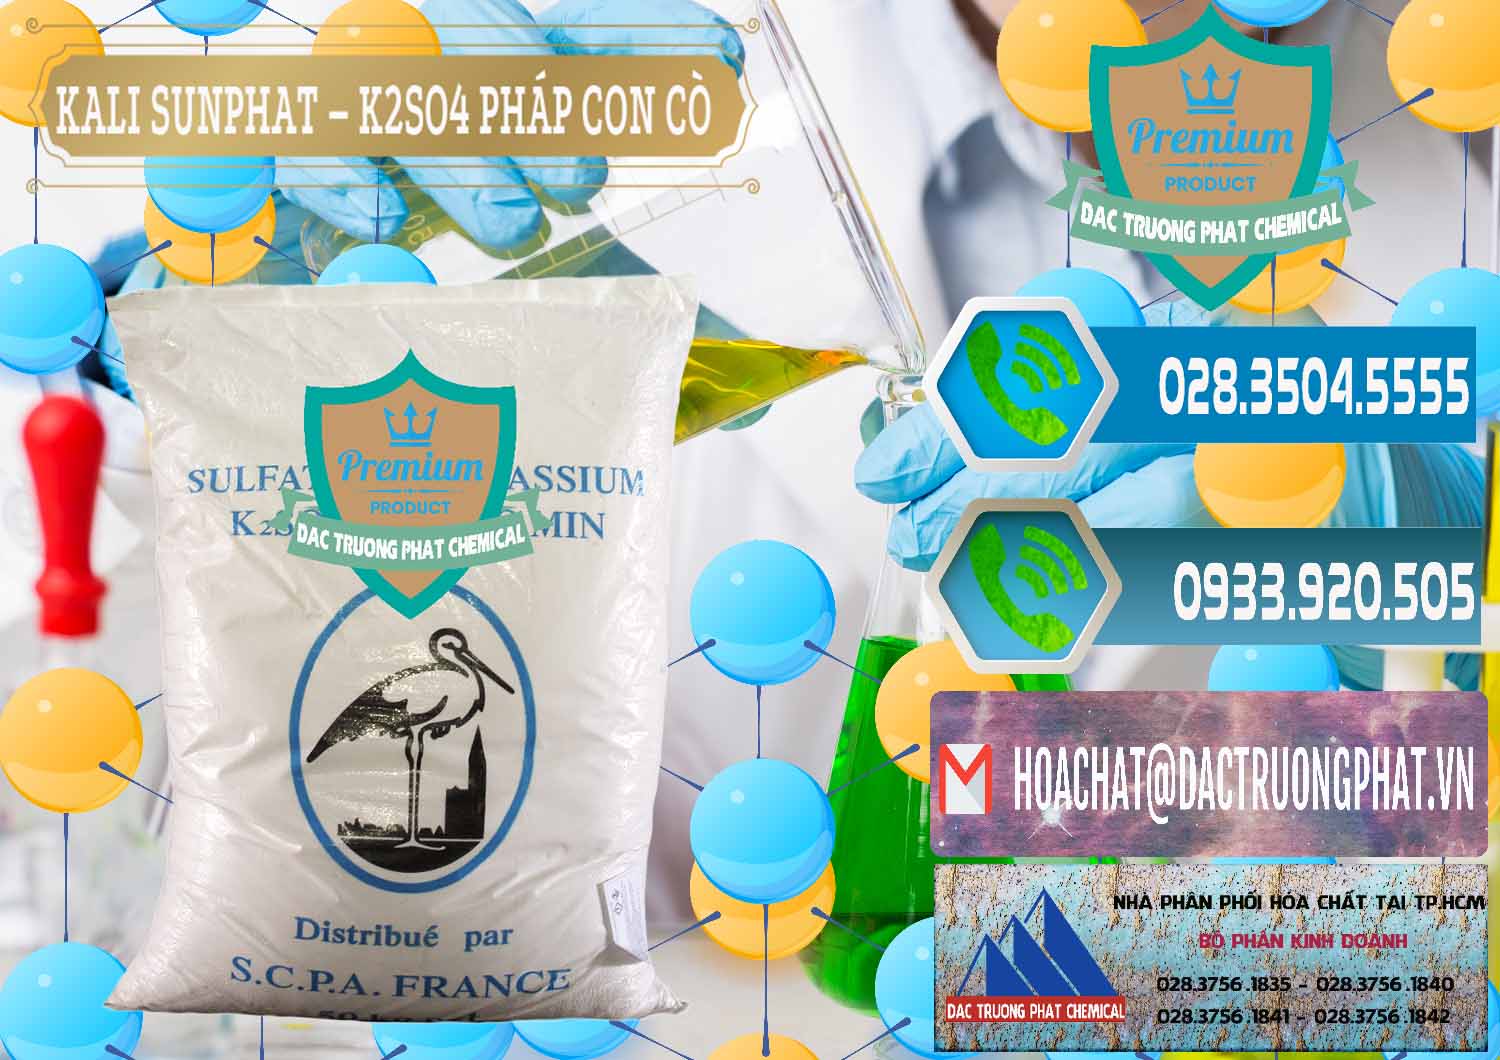 Nhà cung cấp và bán Kali Sunphat – K2SO4 Con Cò Pháp France - 0083 - Chuyên phân phối _ bán hóa chất tại TP.HCM - congtyhoachat.net